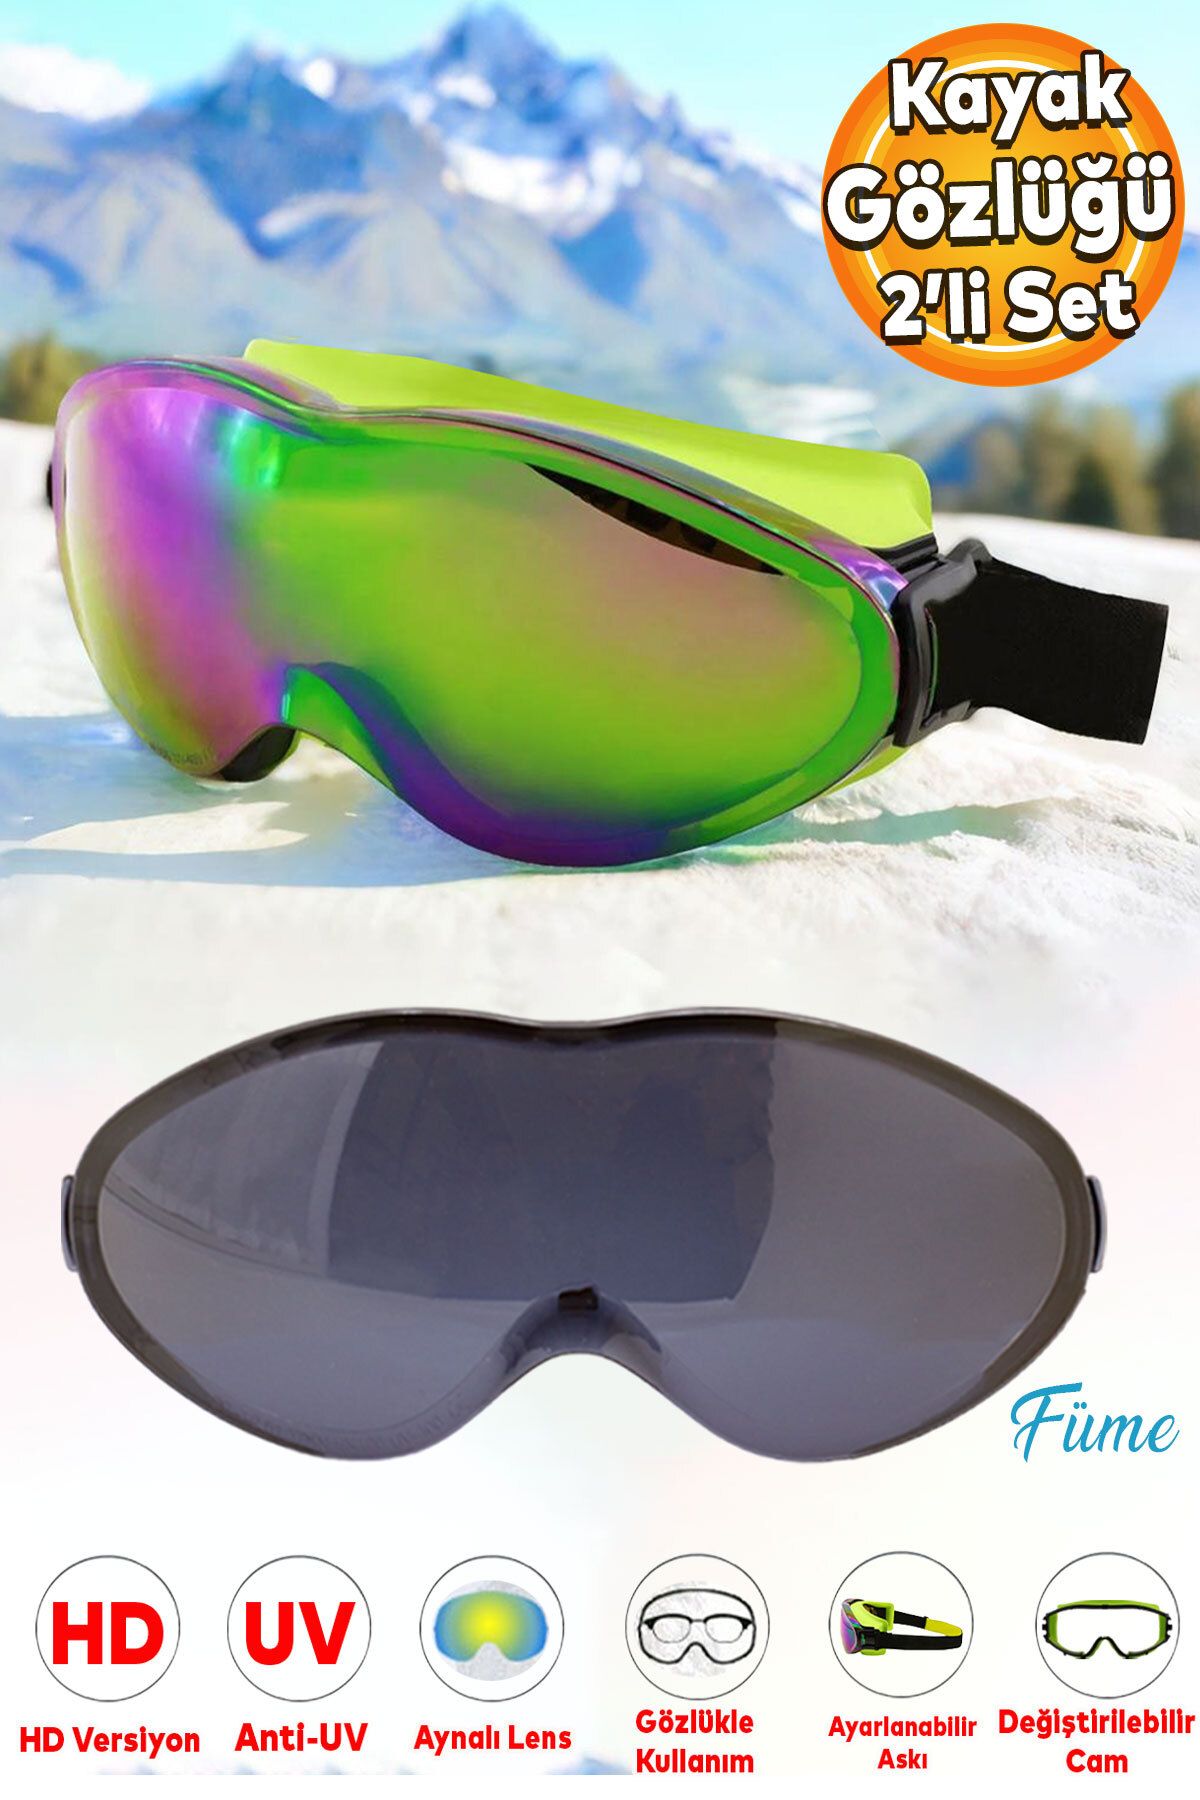 Badem10 Bellasimo Kayak Gözlüğü Değiştirebilir Camlı Antifog Güneş Kar Gözlük Gökkuşağı 1 Adet Yedek Cam